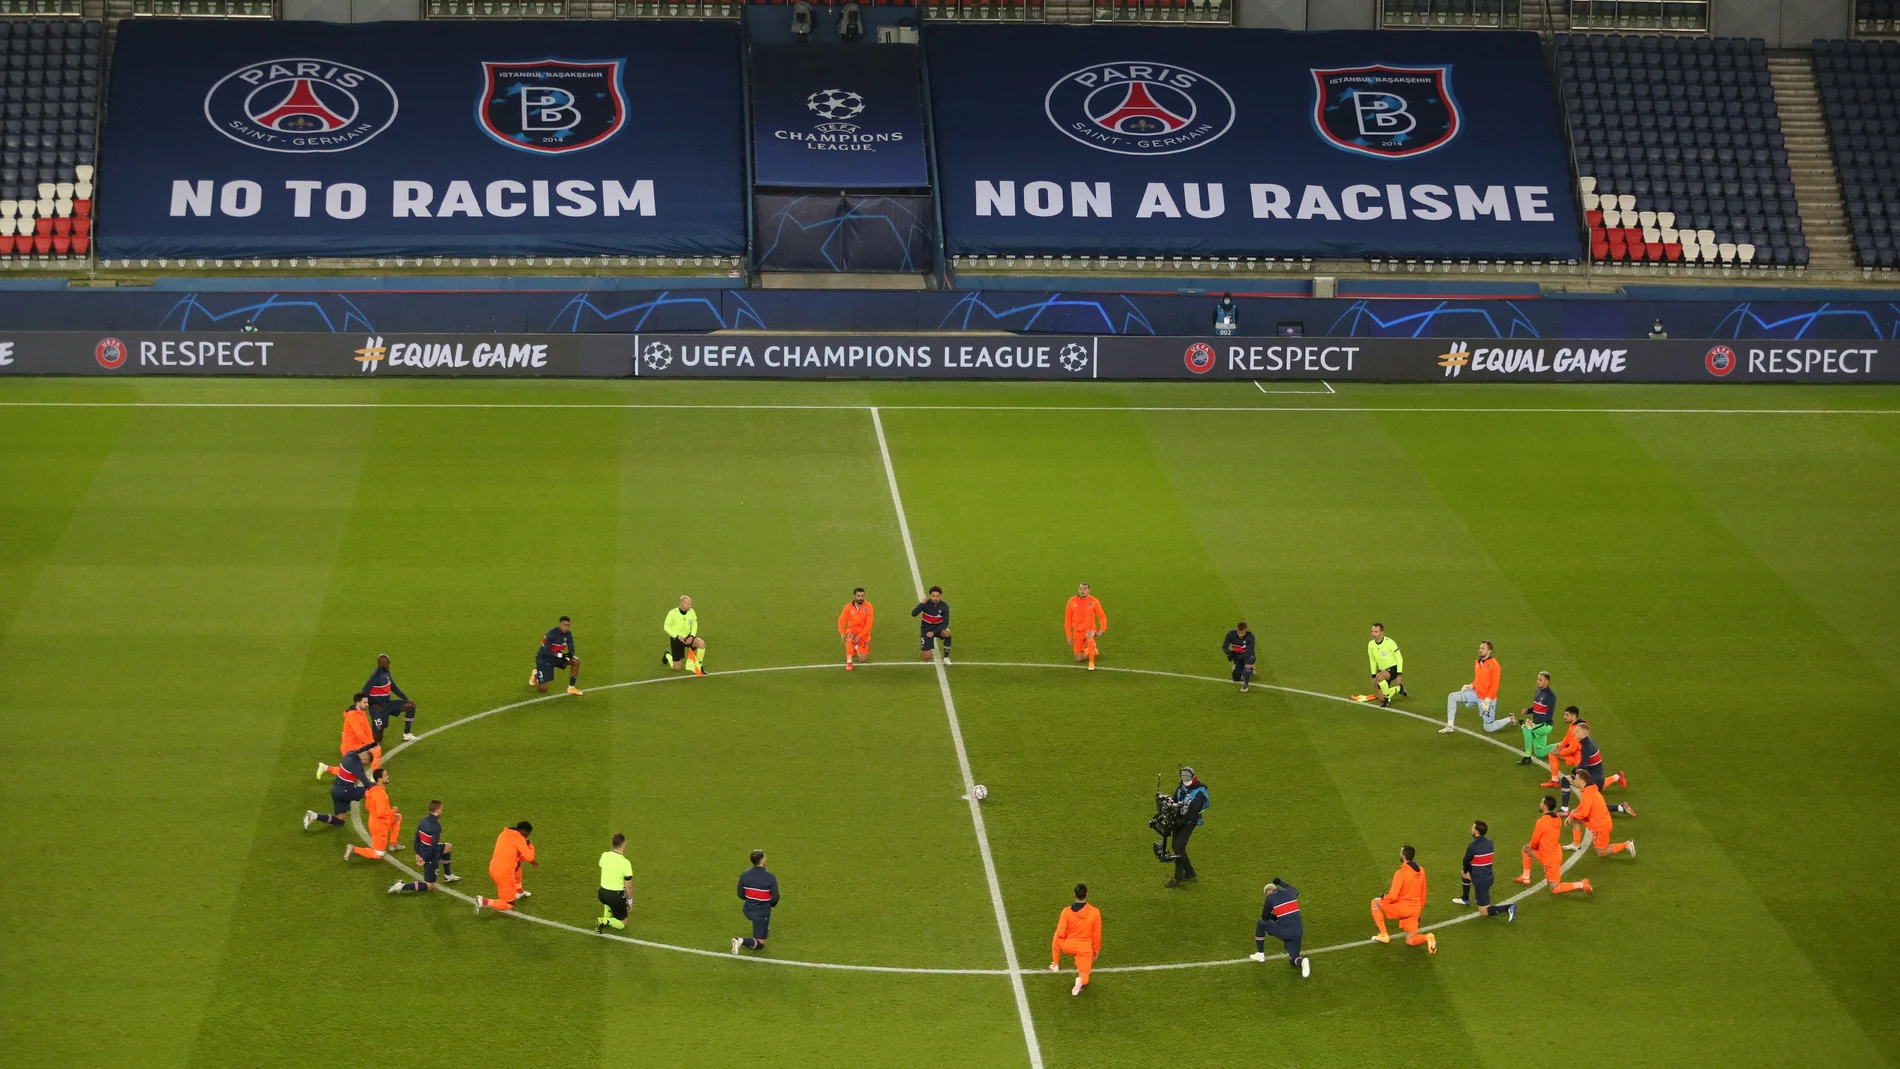 Los jugadores del PSG y del Istanbul Basaksehir F.K. haciendo el gesto en contra del racismo antes del partido que suspendieron